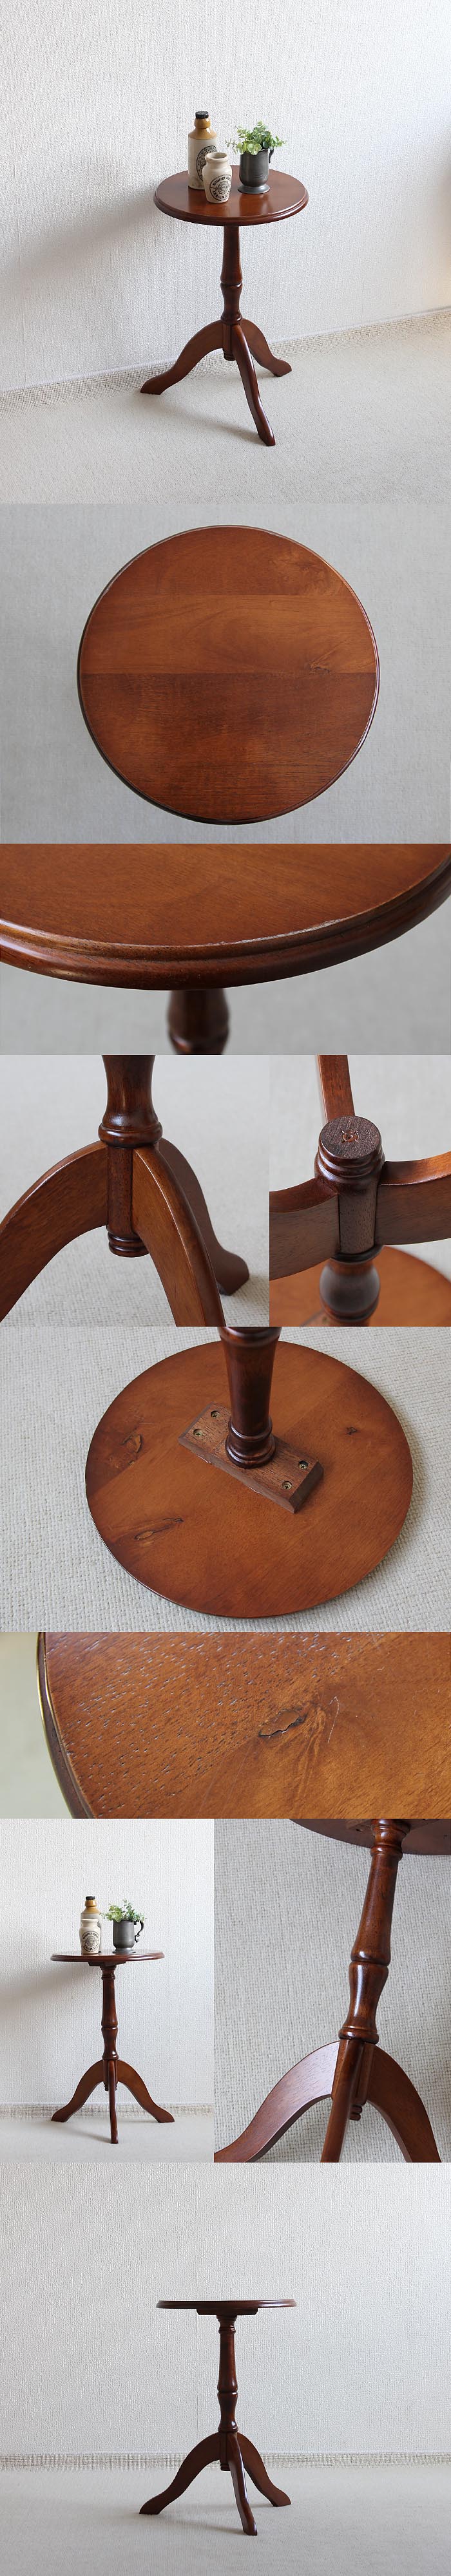 イギリス アンティーク調 ワインテーブル 木製テーブル 花台 インテリア 家具「飾り台にも」V-832